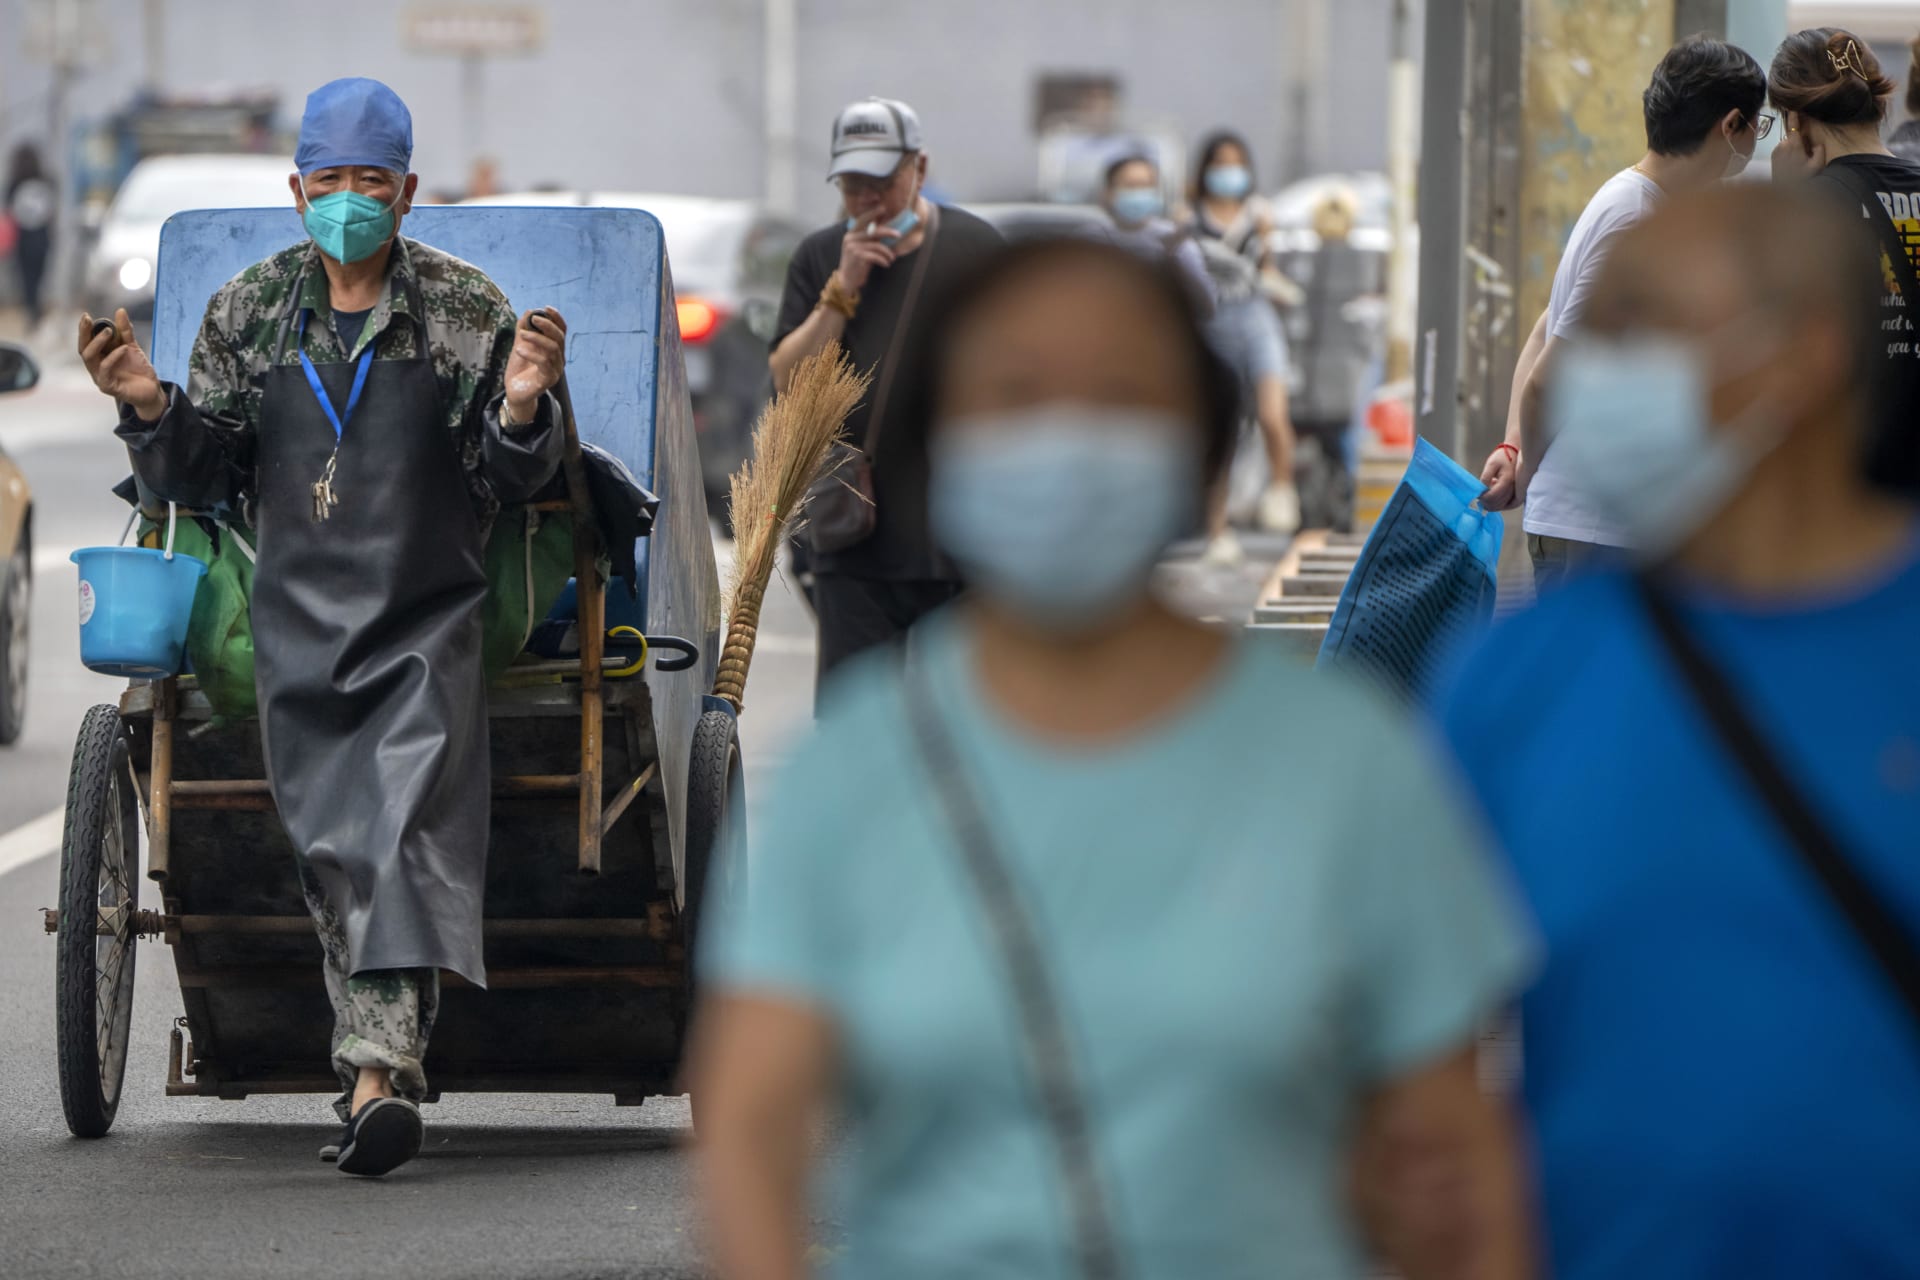 Velká čínská města se potýkají s další vlnou pandemie koronaviru. Kvůli subvariantě omikronu musí podstoupit test miliony lidí.